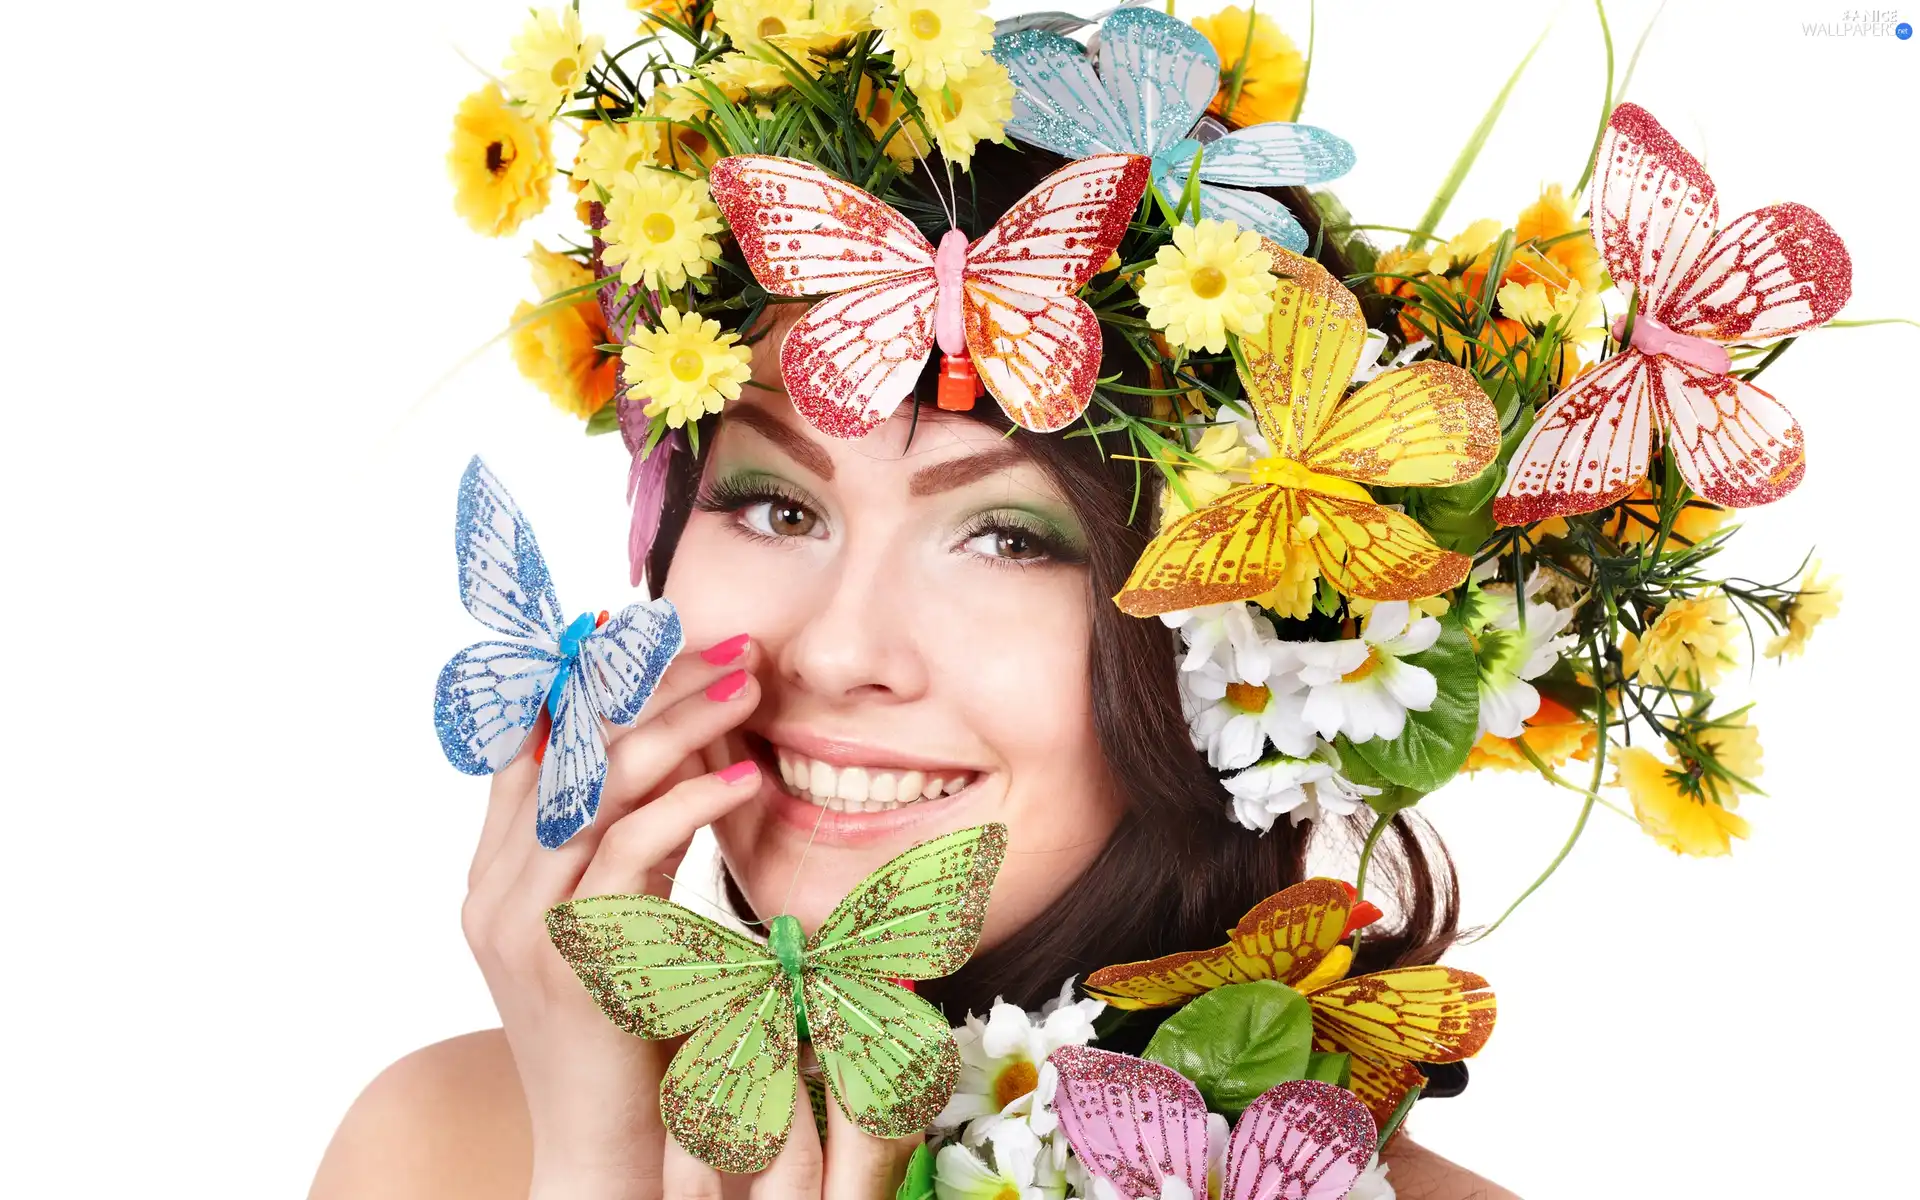 Women, Flowers, butterflies, make-up